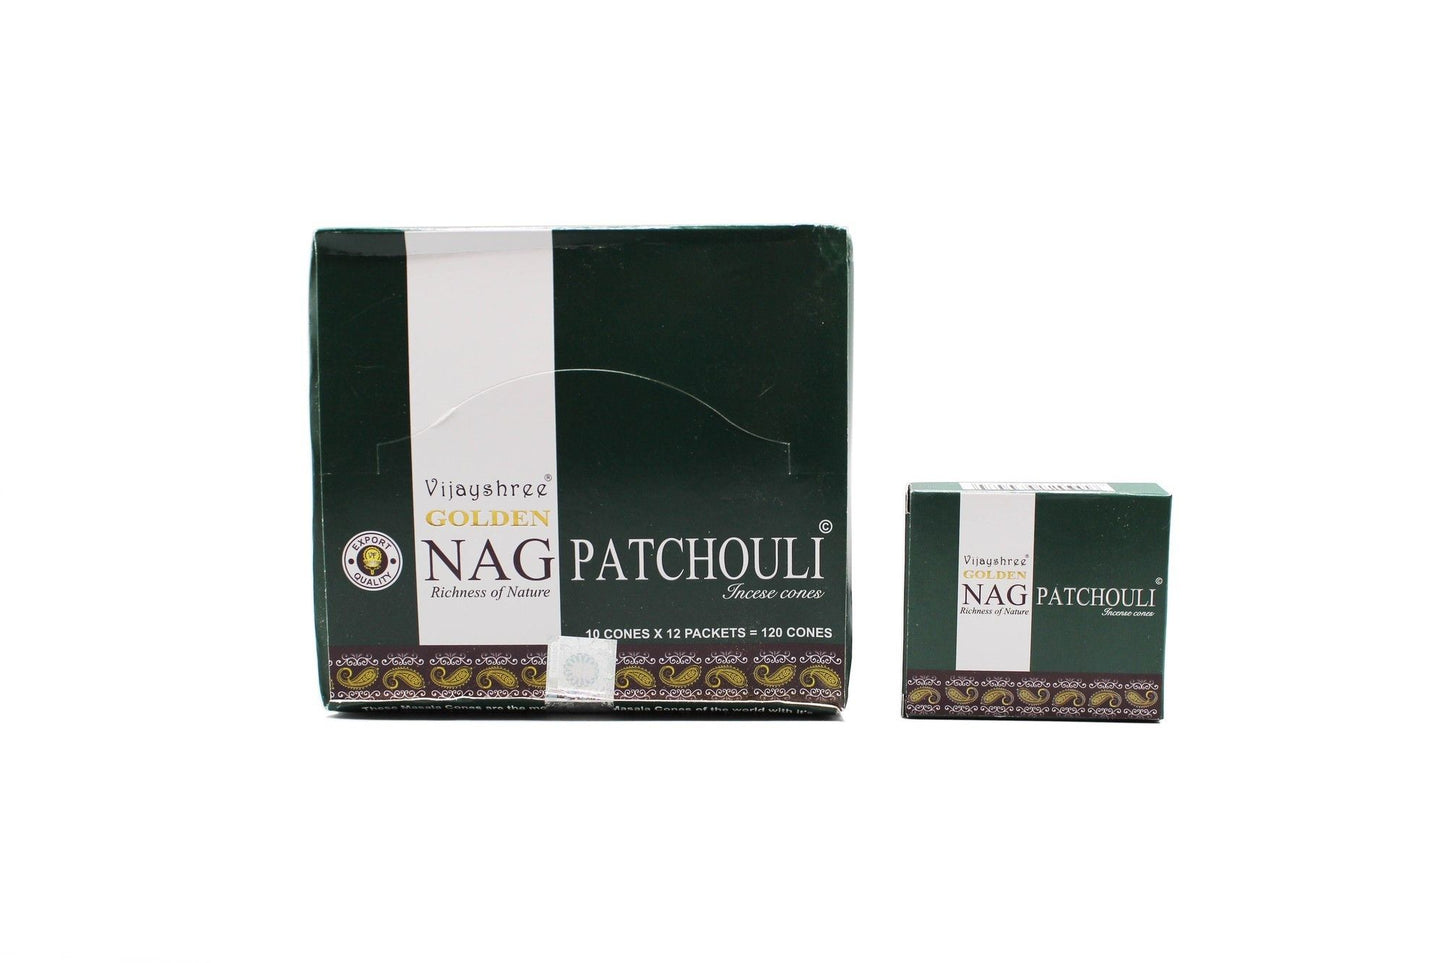 Golden Nag Patchouli Kegel - Sinnliches Aroma für tiefe Entspannung